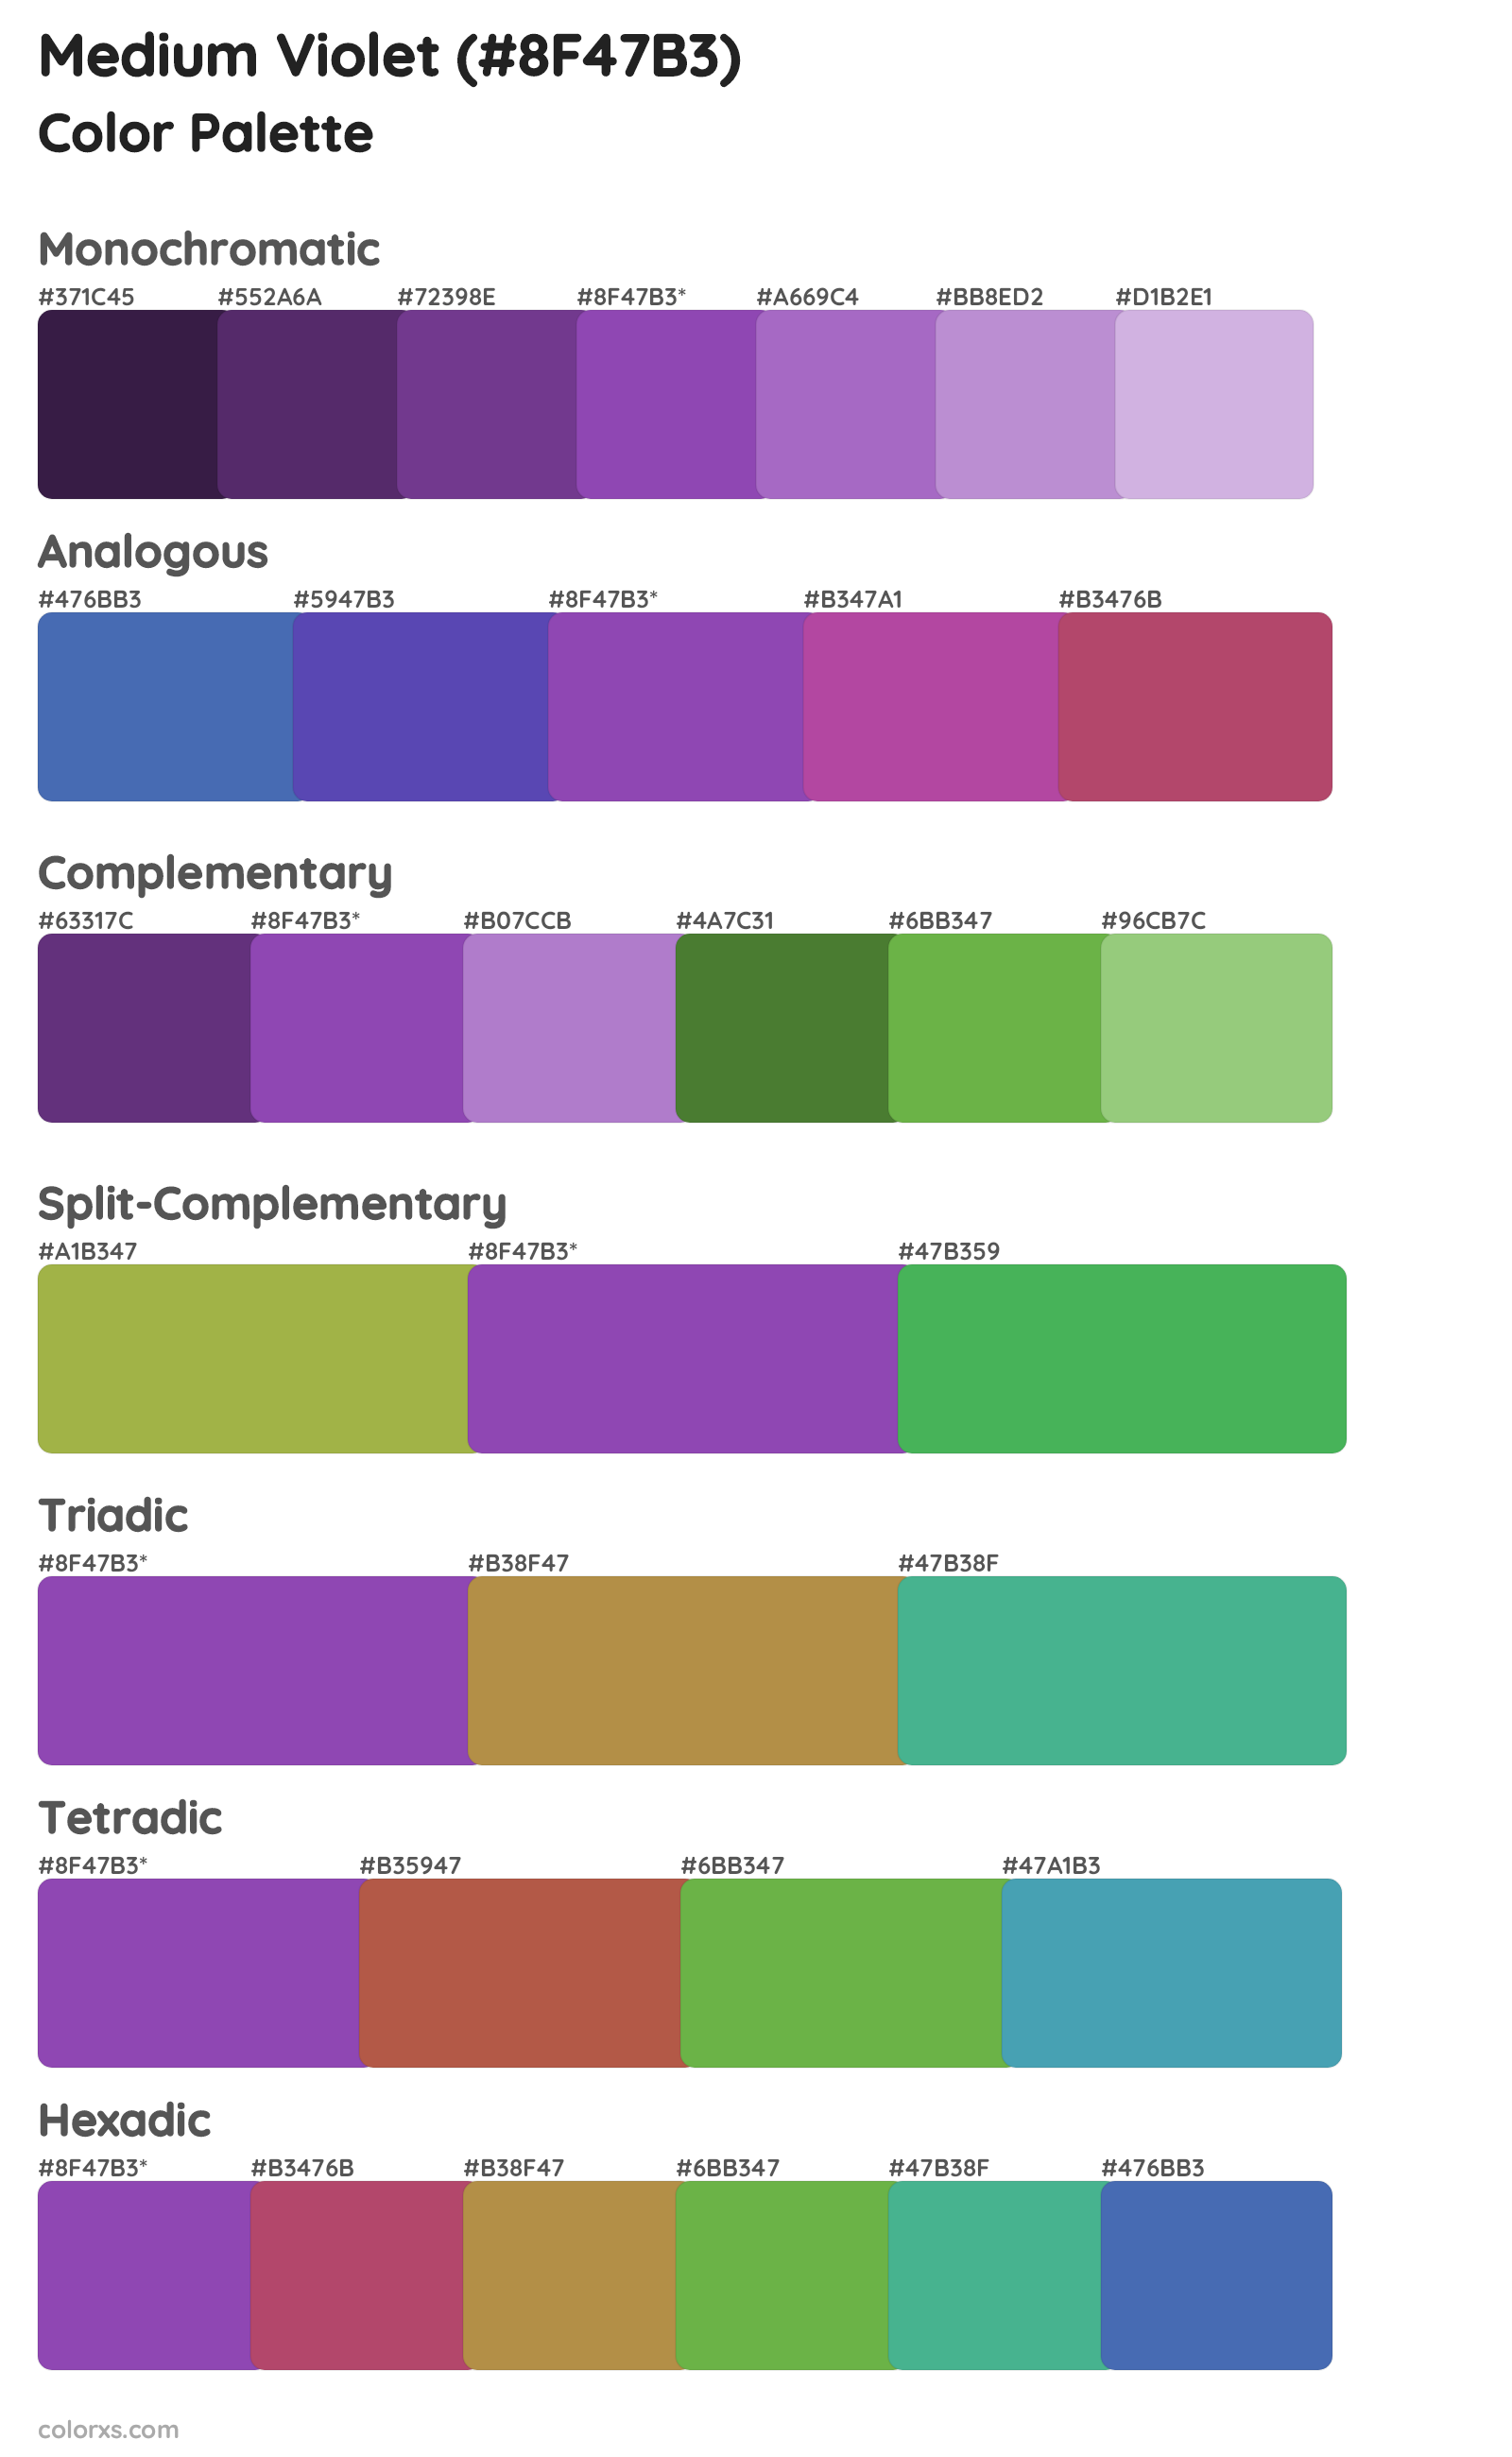 Medium Violet Color Scheme Palettes